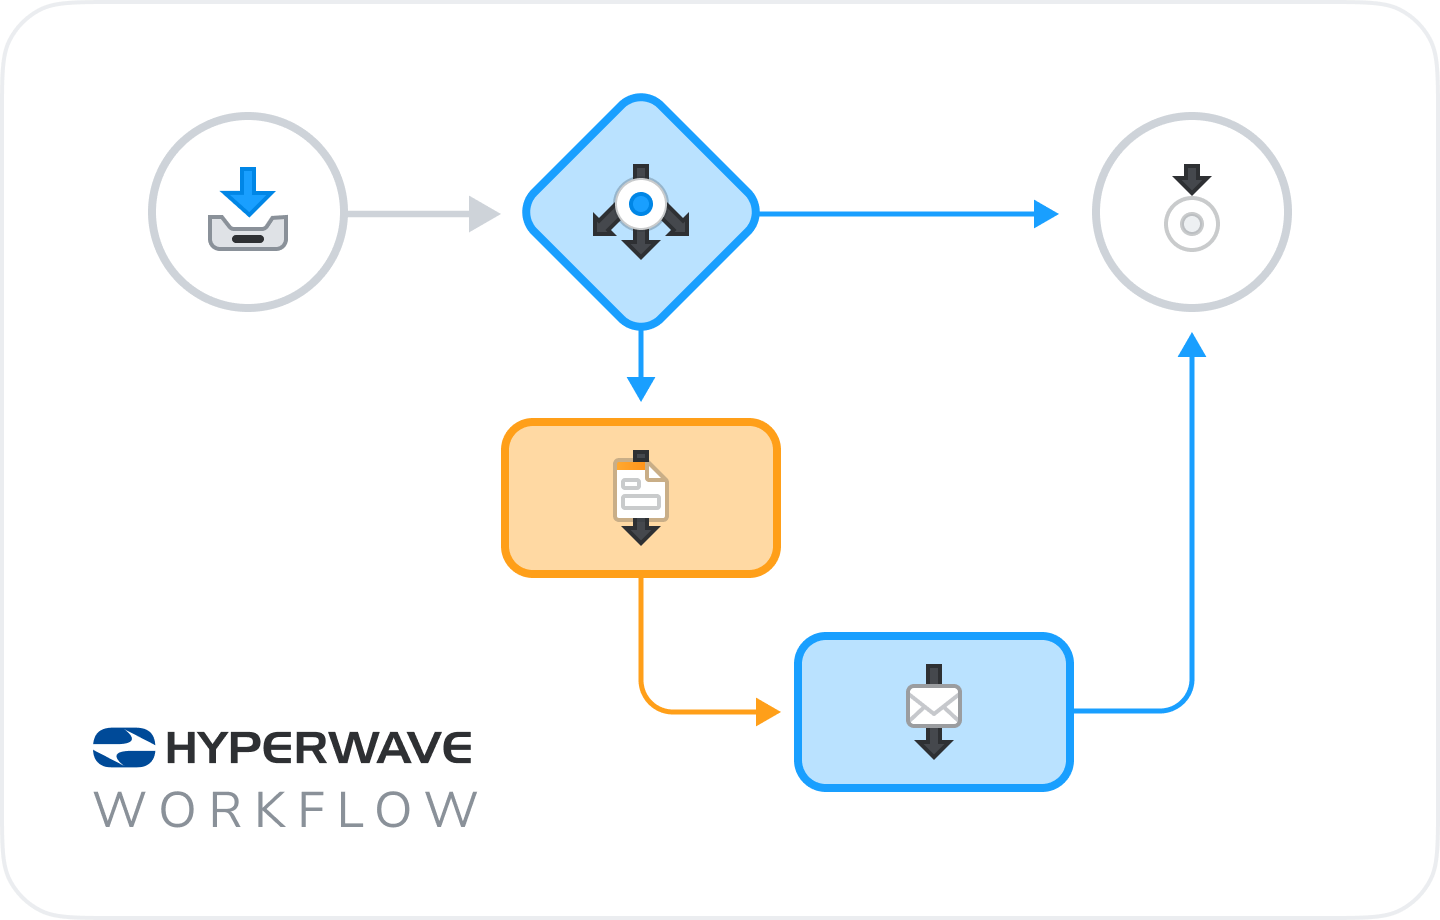 Hyperwave Workflow